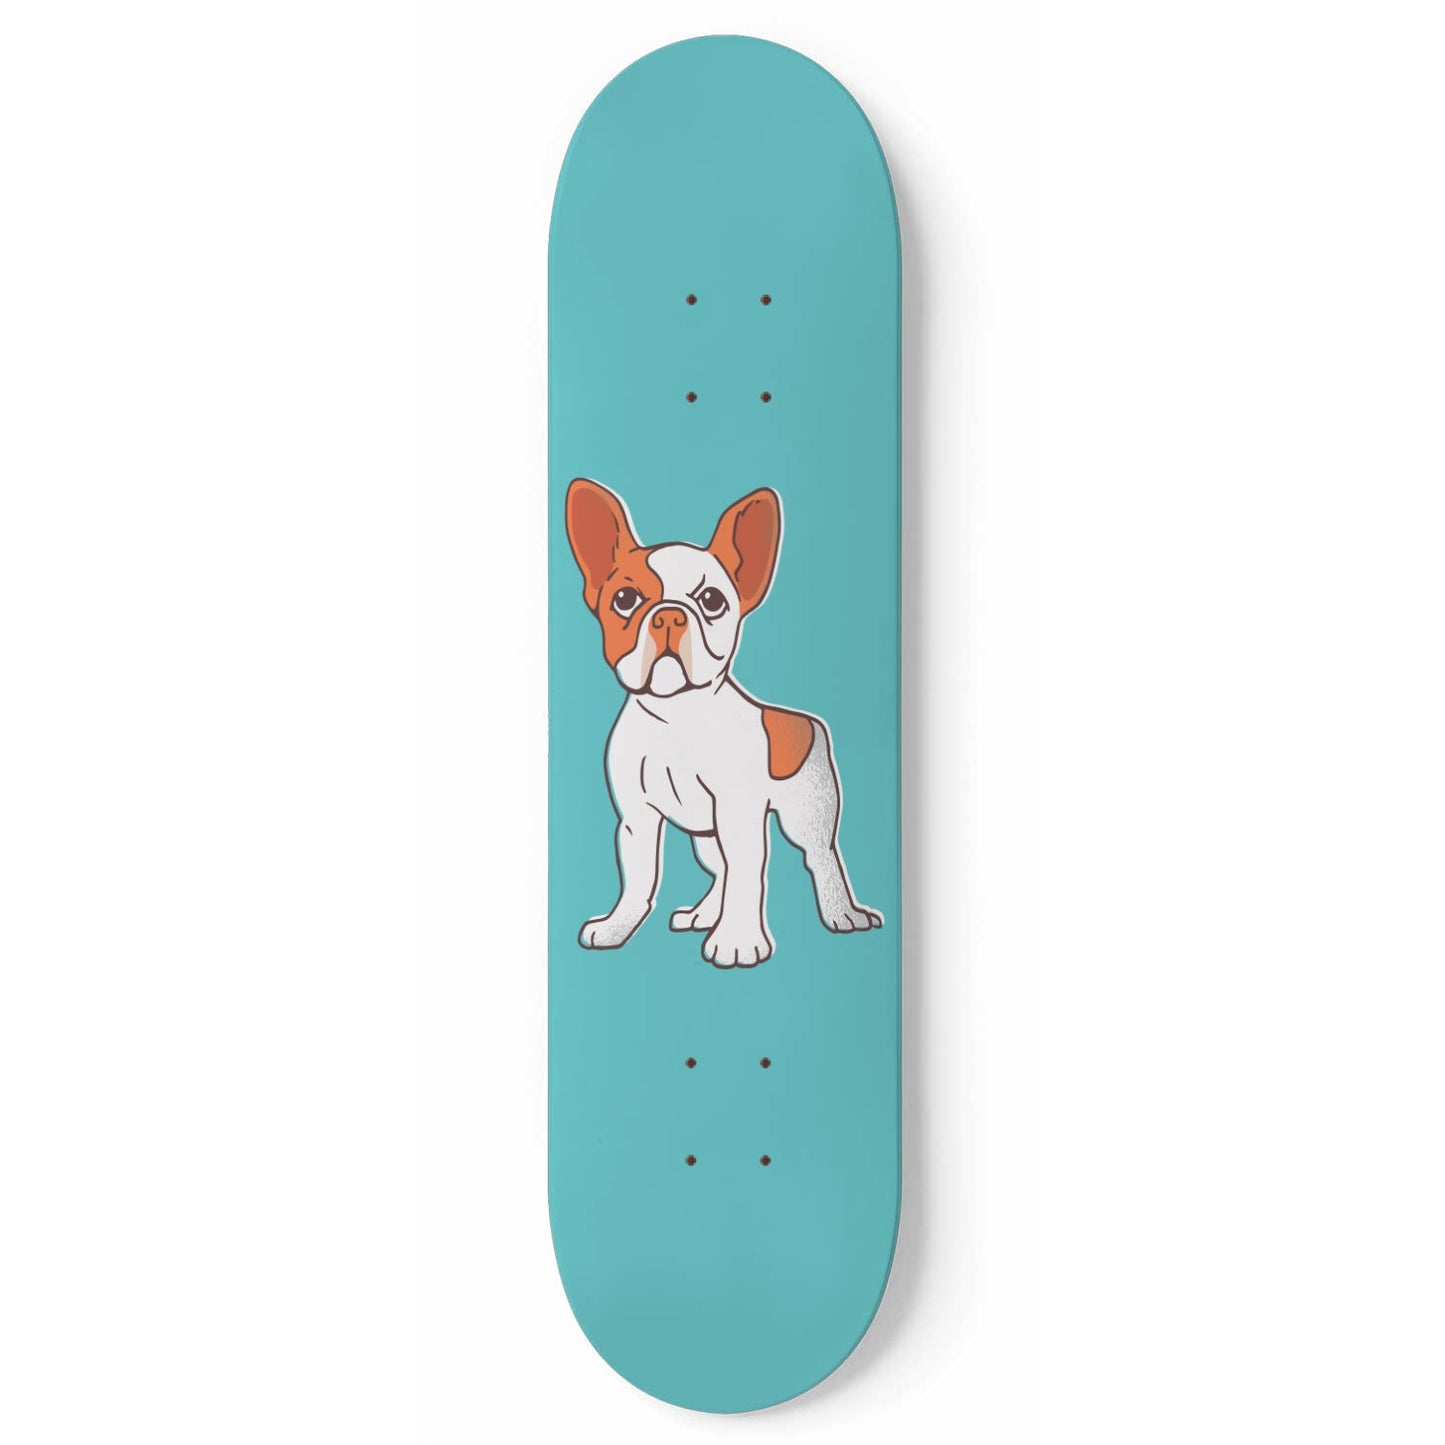 Pup Life #8.0.1 - Skater Wall